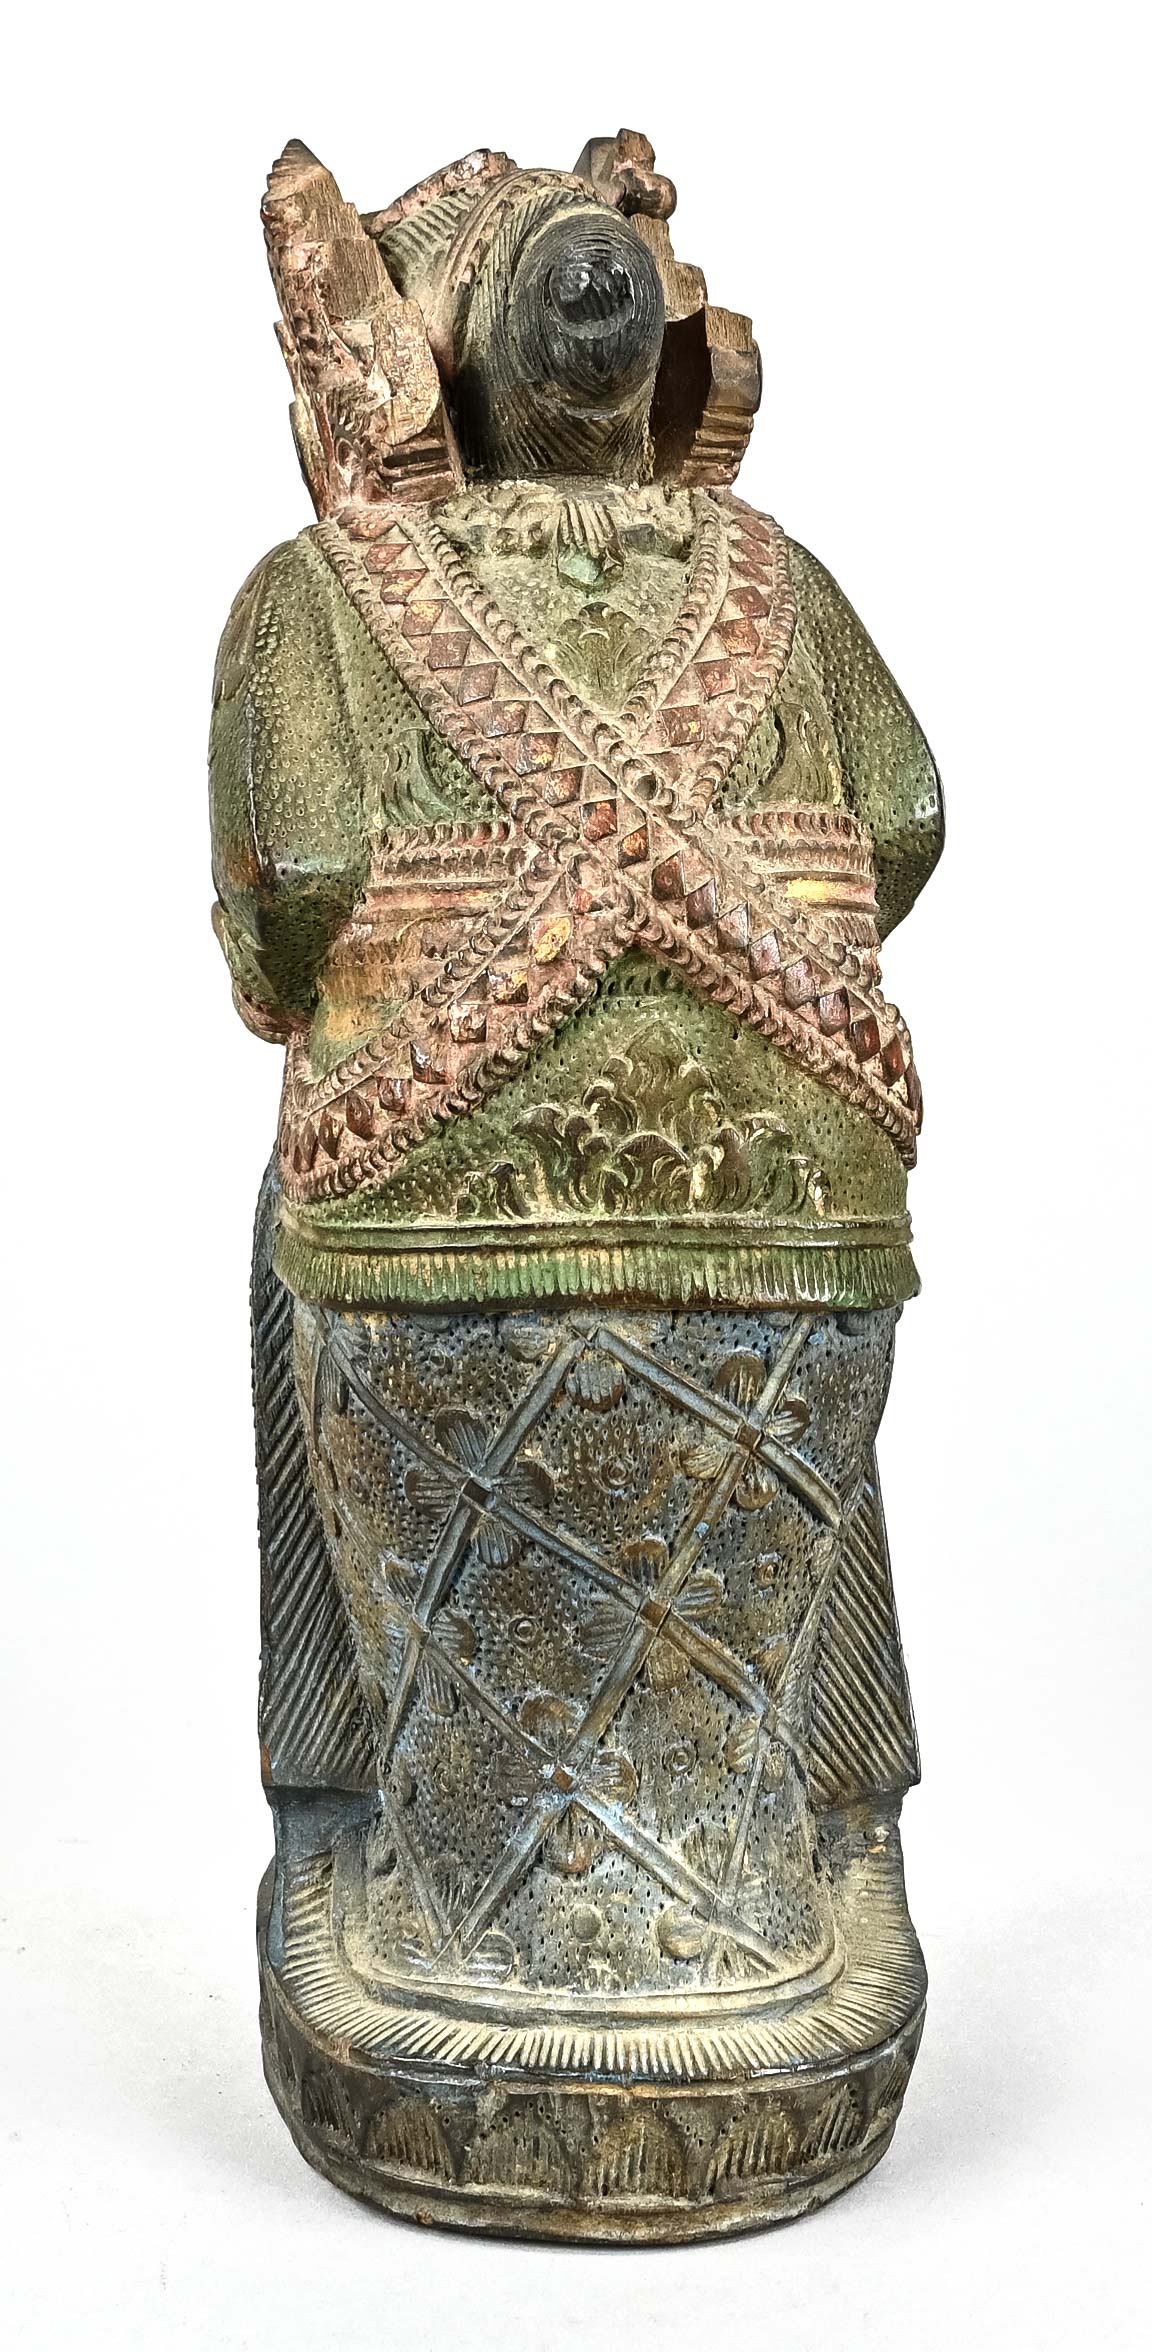 Indonesische Holzfigur, farbig gefasst, Höhe 28,5 cm, Sockel Dm 13 cm, Kopfbedeckung beschädigt - Bild 4 aus 5